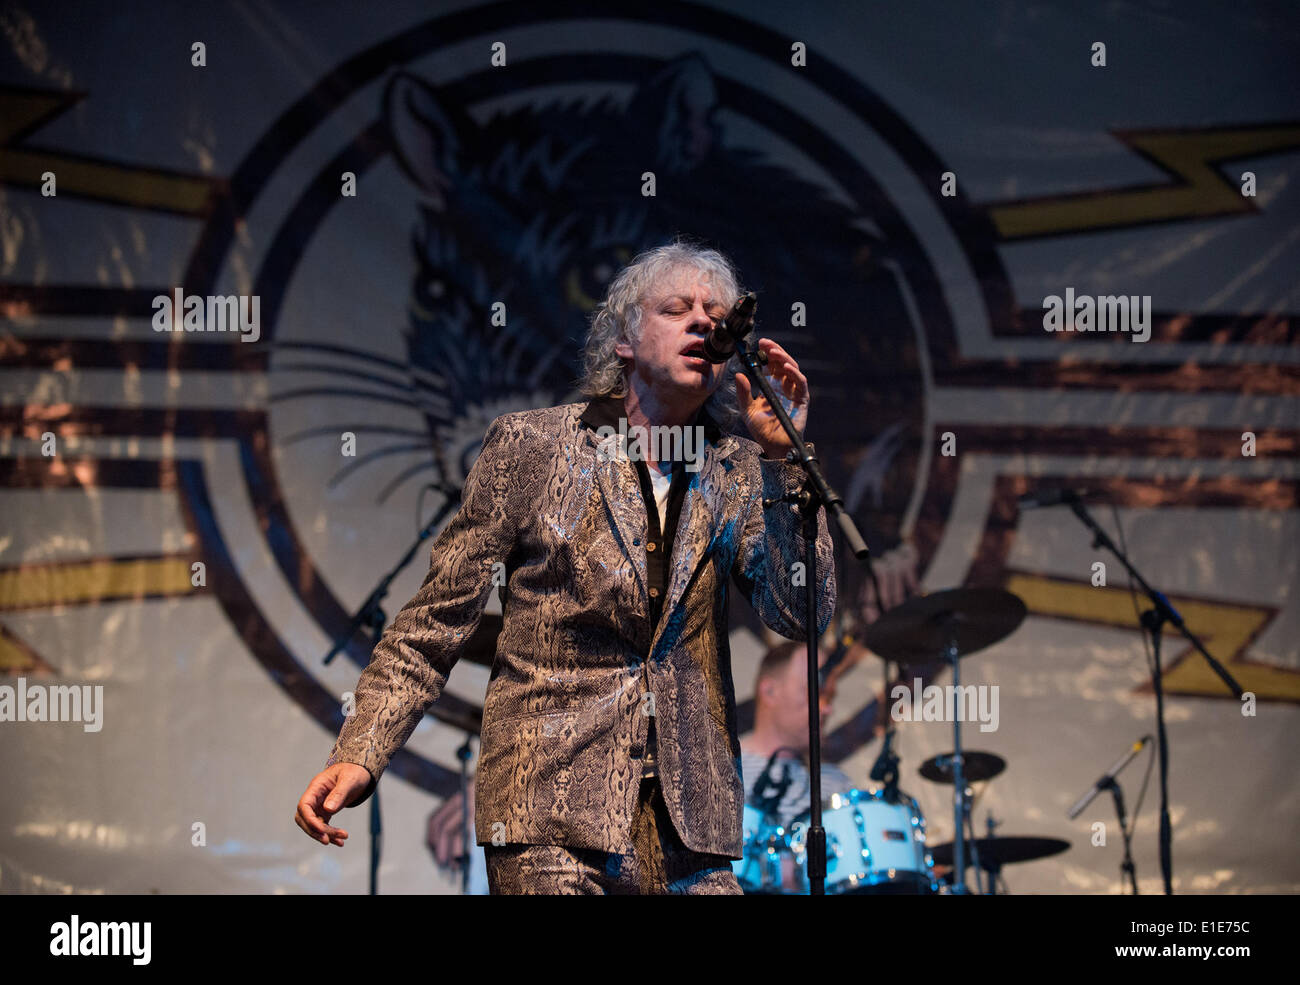 Wychwood Festival, Cheltenham, Vereinigtes Königreich. 1. Juni 2014. Bob Geldof & die Boomtown Rats, führen am 10. Wychwood Festival Cheltenham UK Credit: Charlie Bryan/Alamy Live News Stockfoto